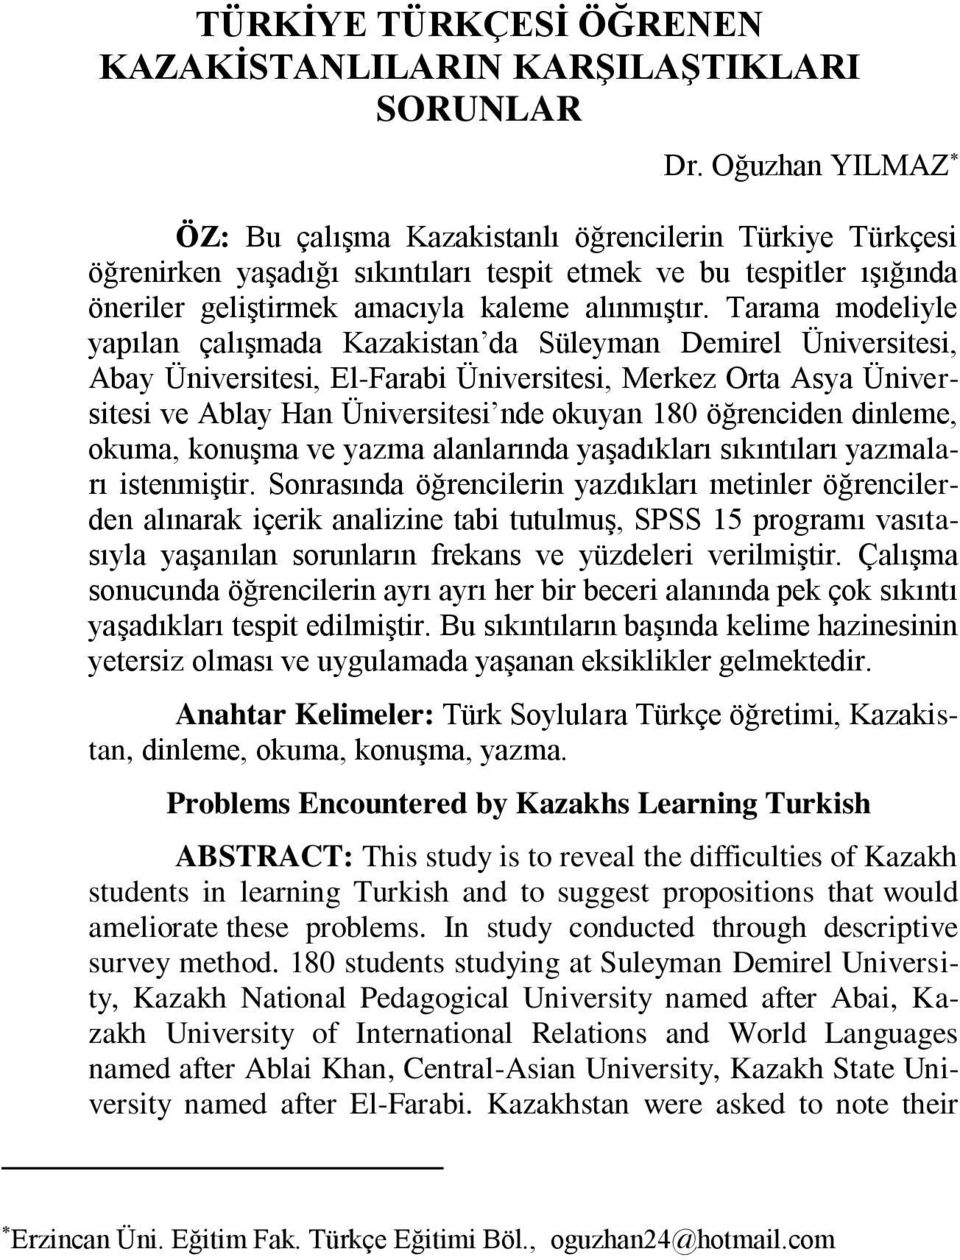 Tarama modeliyle yapılan çalışmada Kazakistan da Süleyman Demirel Üniversitesi, Abay Üniversitesi, El-Farabi Üniversitesi, Merkez Orta Asya Üniversitesi ve Ablay Han Üniversitesi nde okuyan 180